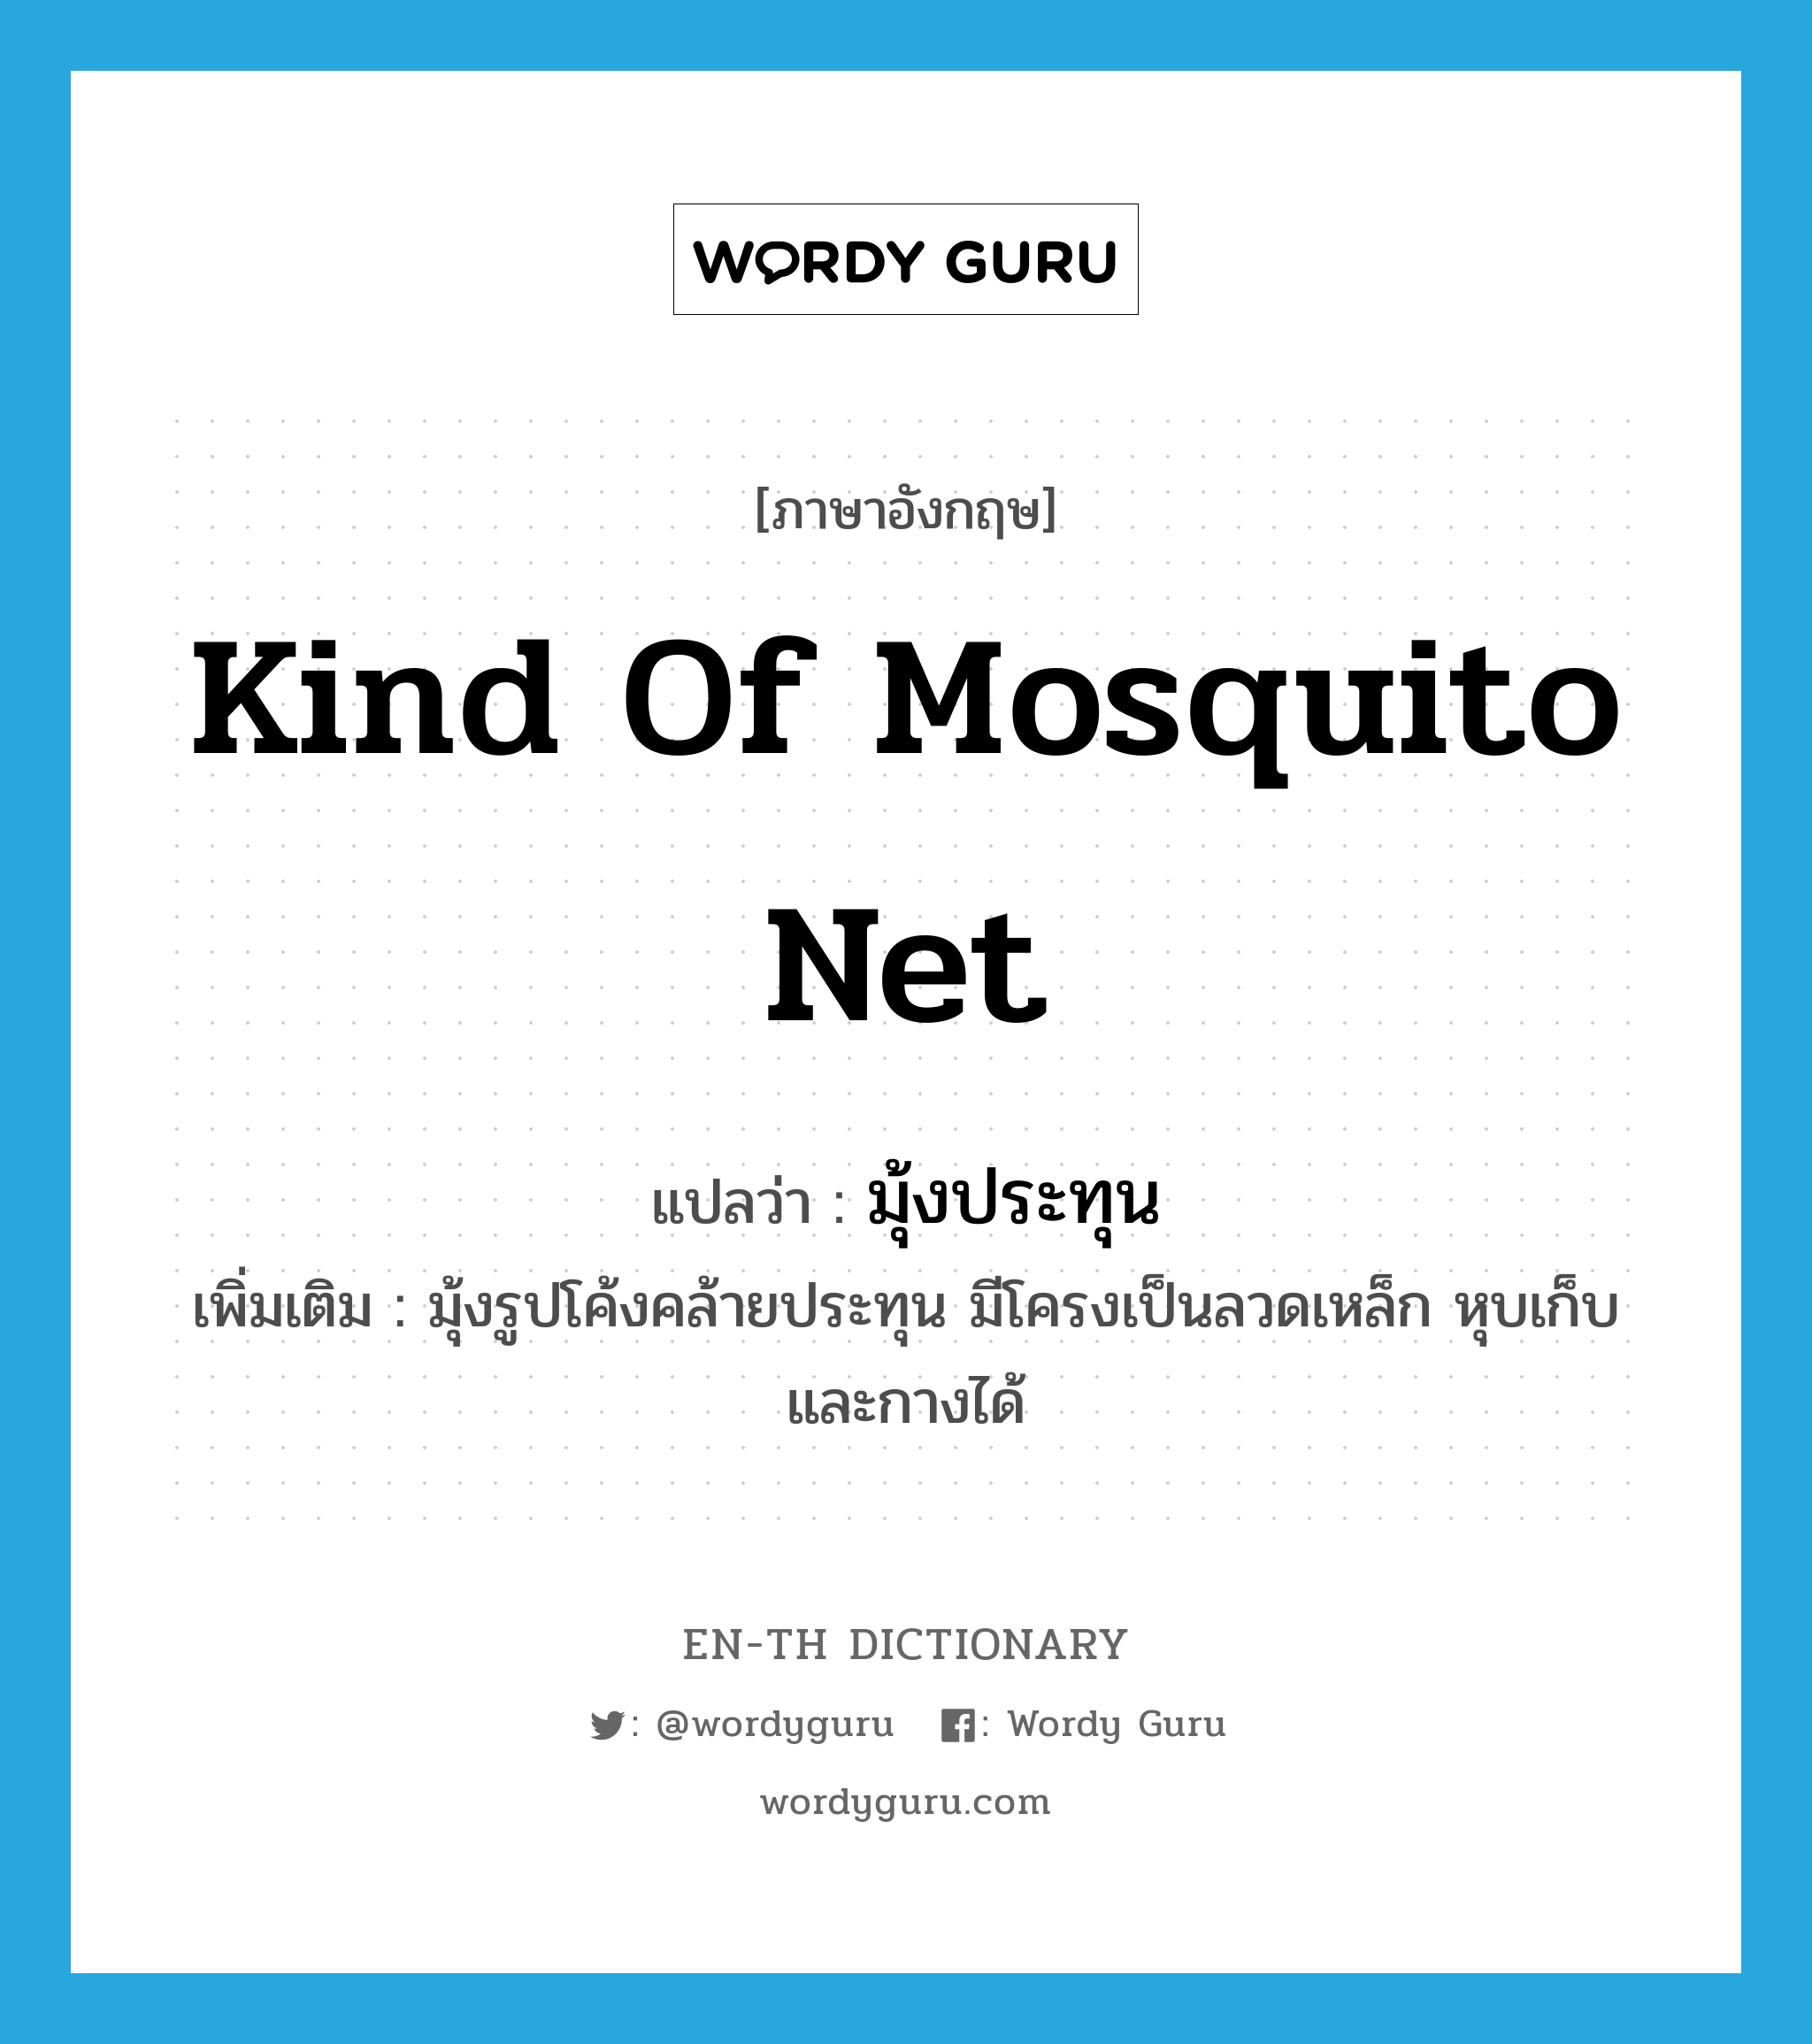 มุ้งประทุน ภาษาอังกฤษ?, คำศัพท์ภาษาอังกฤษ มุ้งประทุน แปลว่า kind of mosquito net ประเภท N เพิ่มเติม มุ้งรูปโค้งคล้ายประทุน มีโครงเป็นลวดเหล็ก หุบเก็บและกางได้ หมวด N